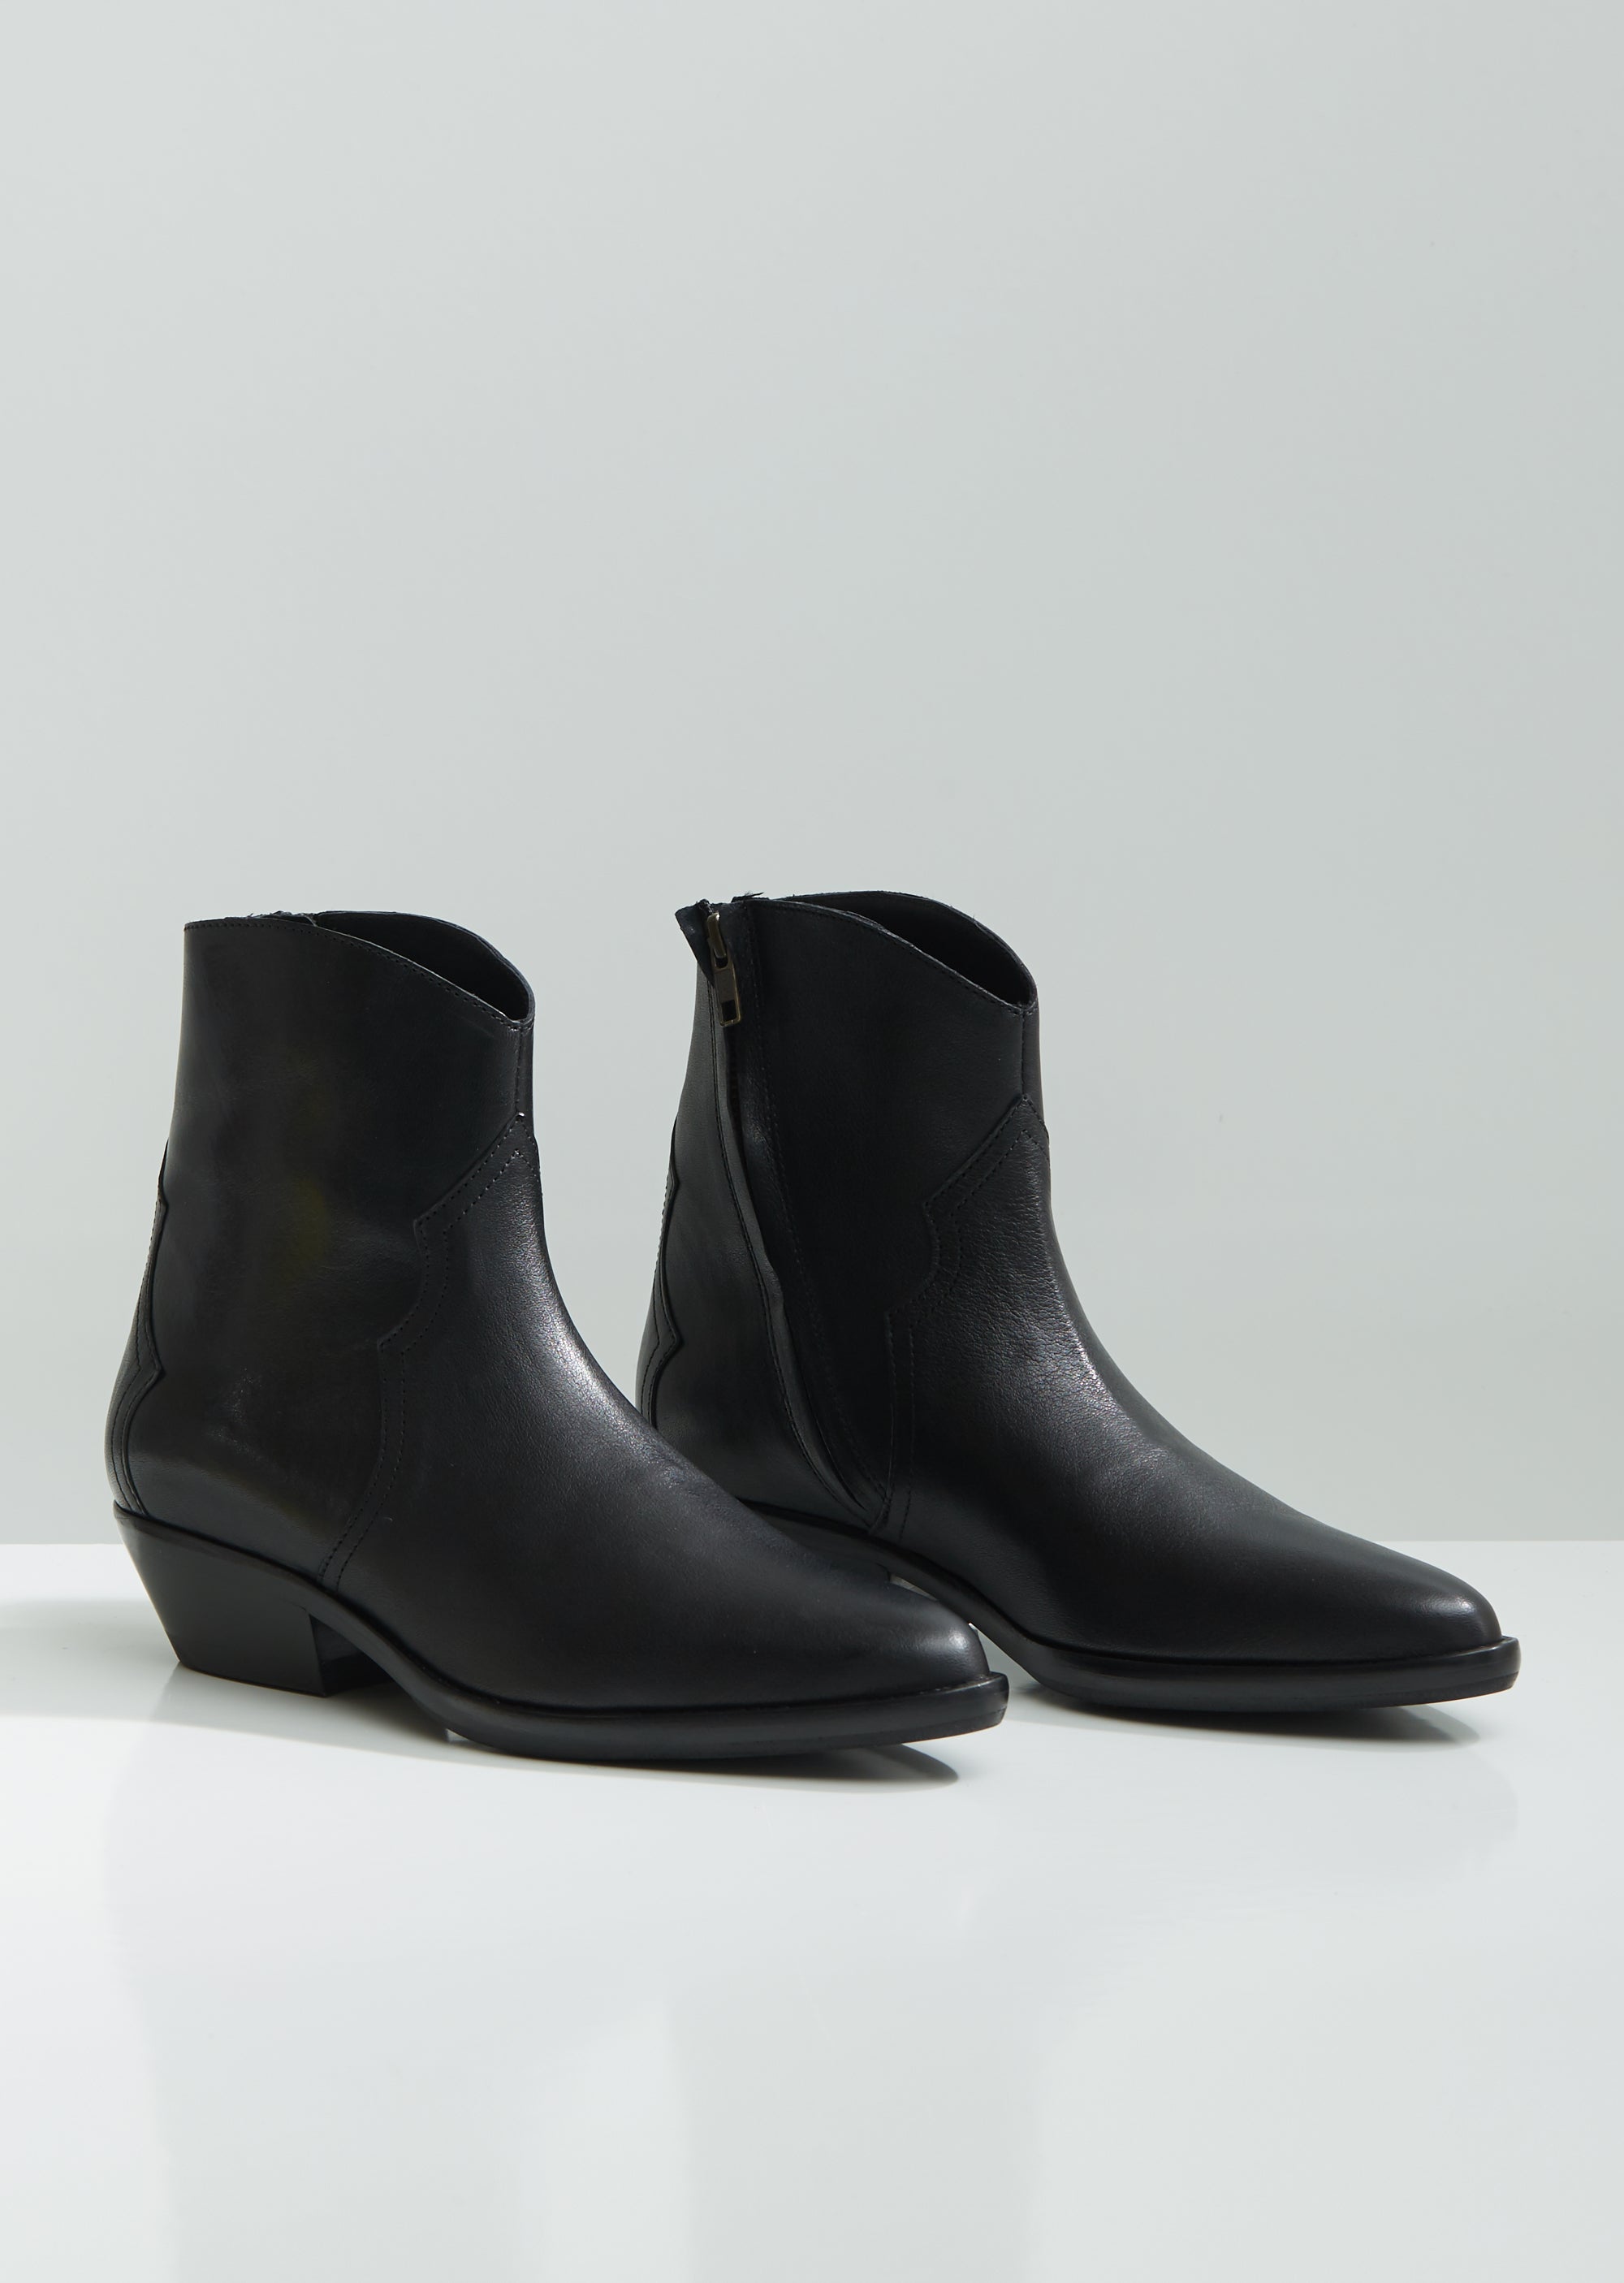 Dantsee Western Ankle Boots by Isabel Marant– La Garçonne